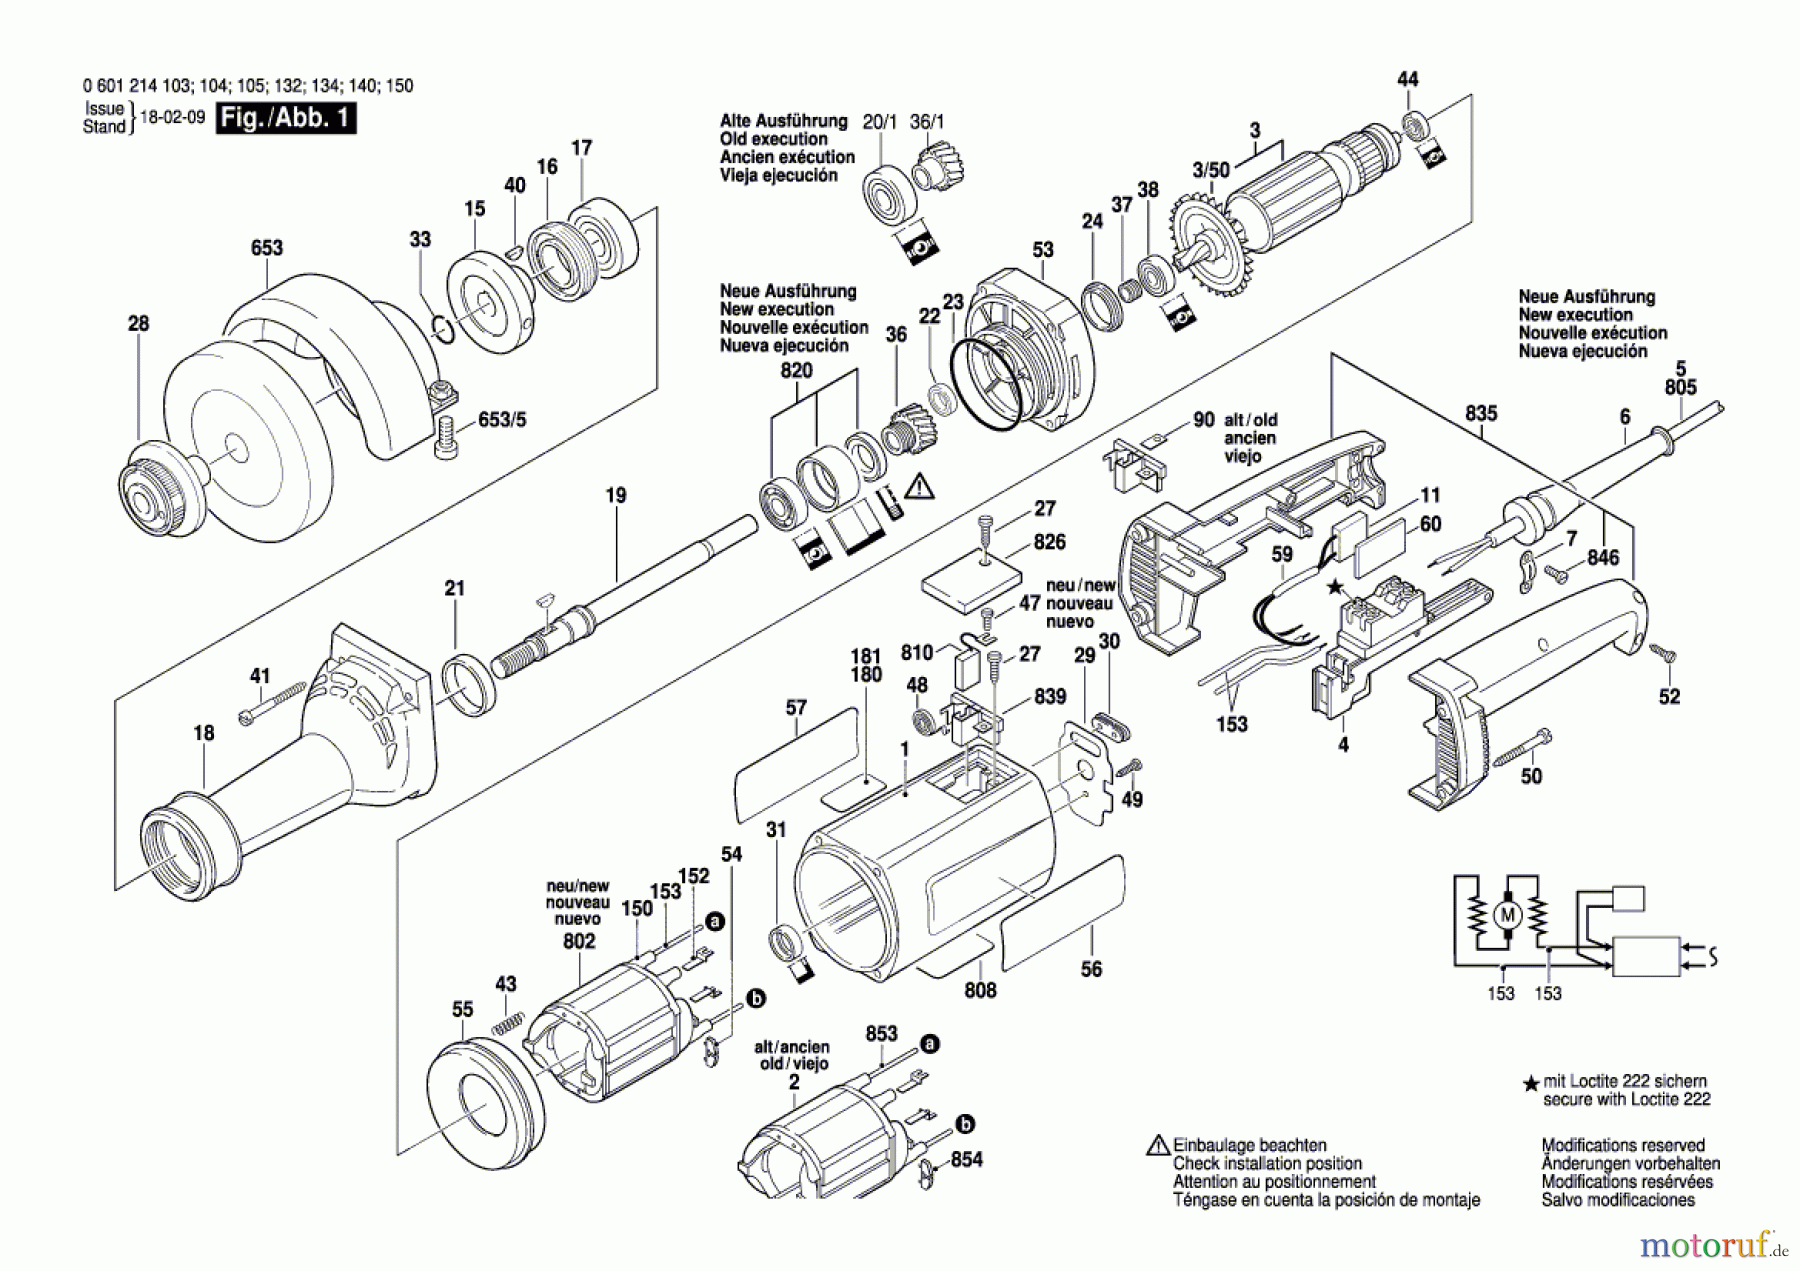  Bosch Werkzeug Geradschleifer GGS 6 S Seite 1